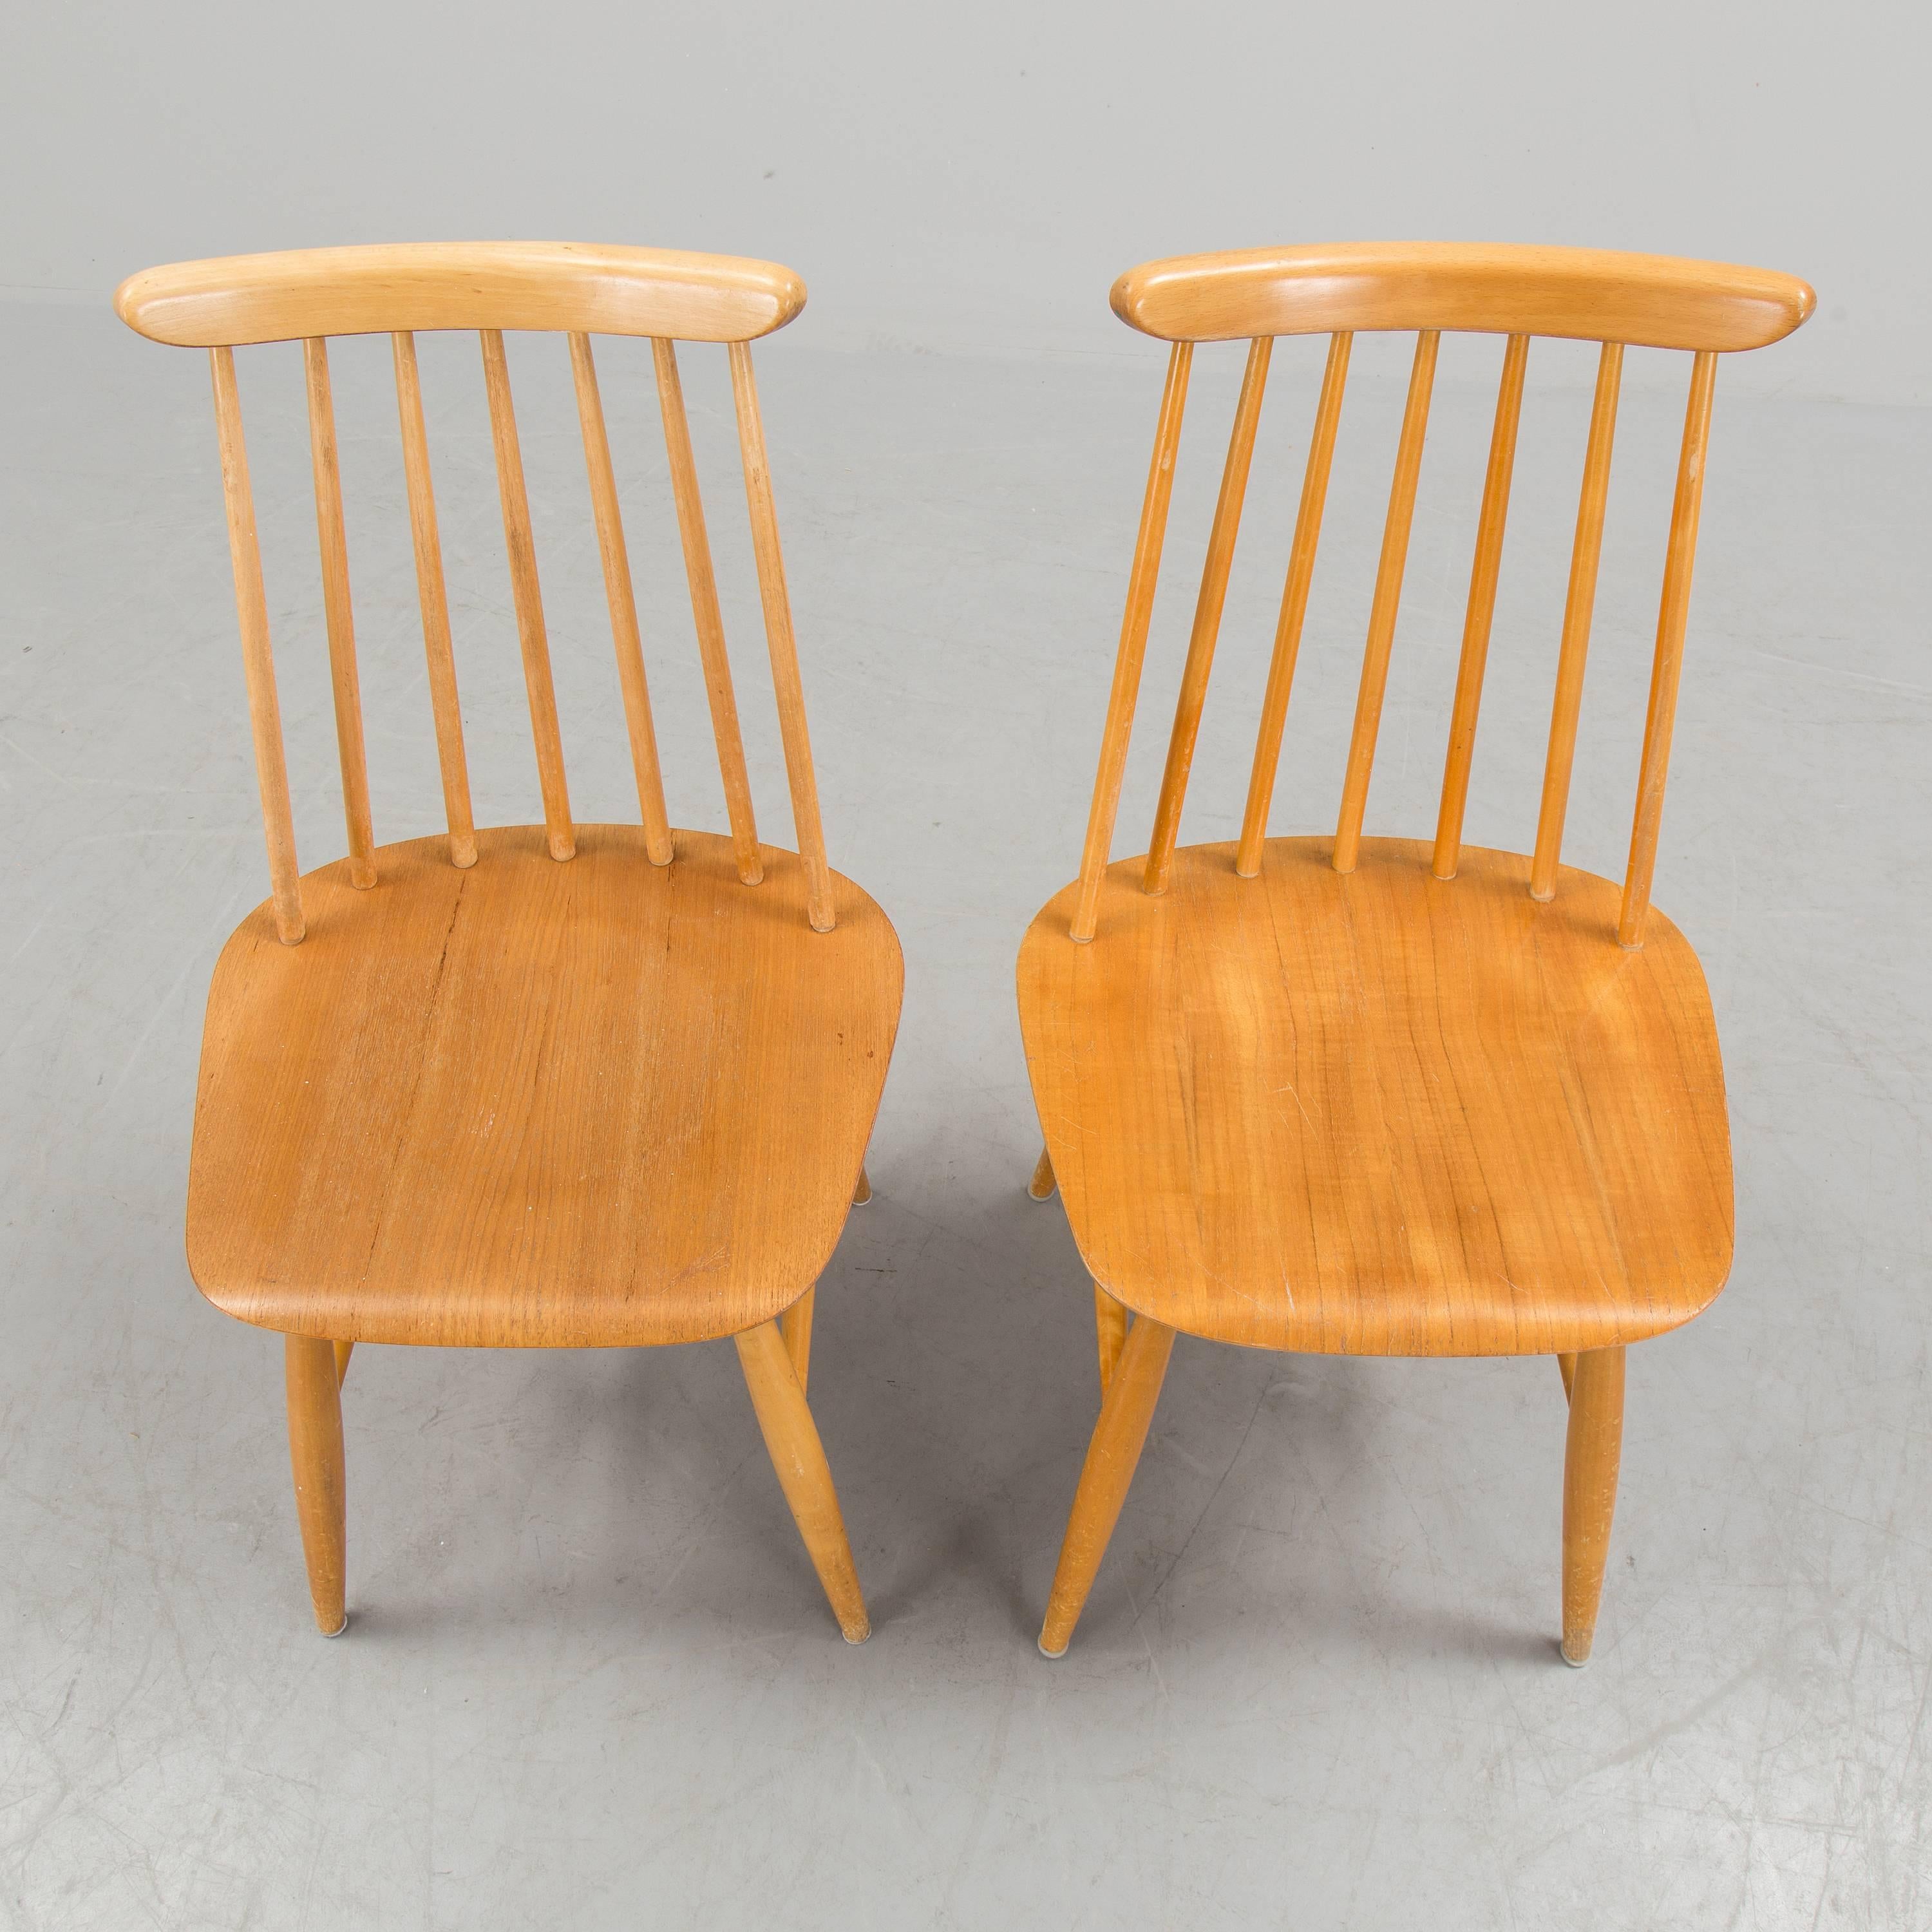 tapiovaara chairs